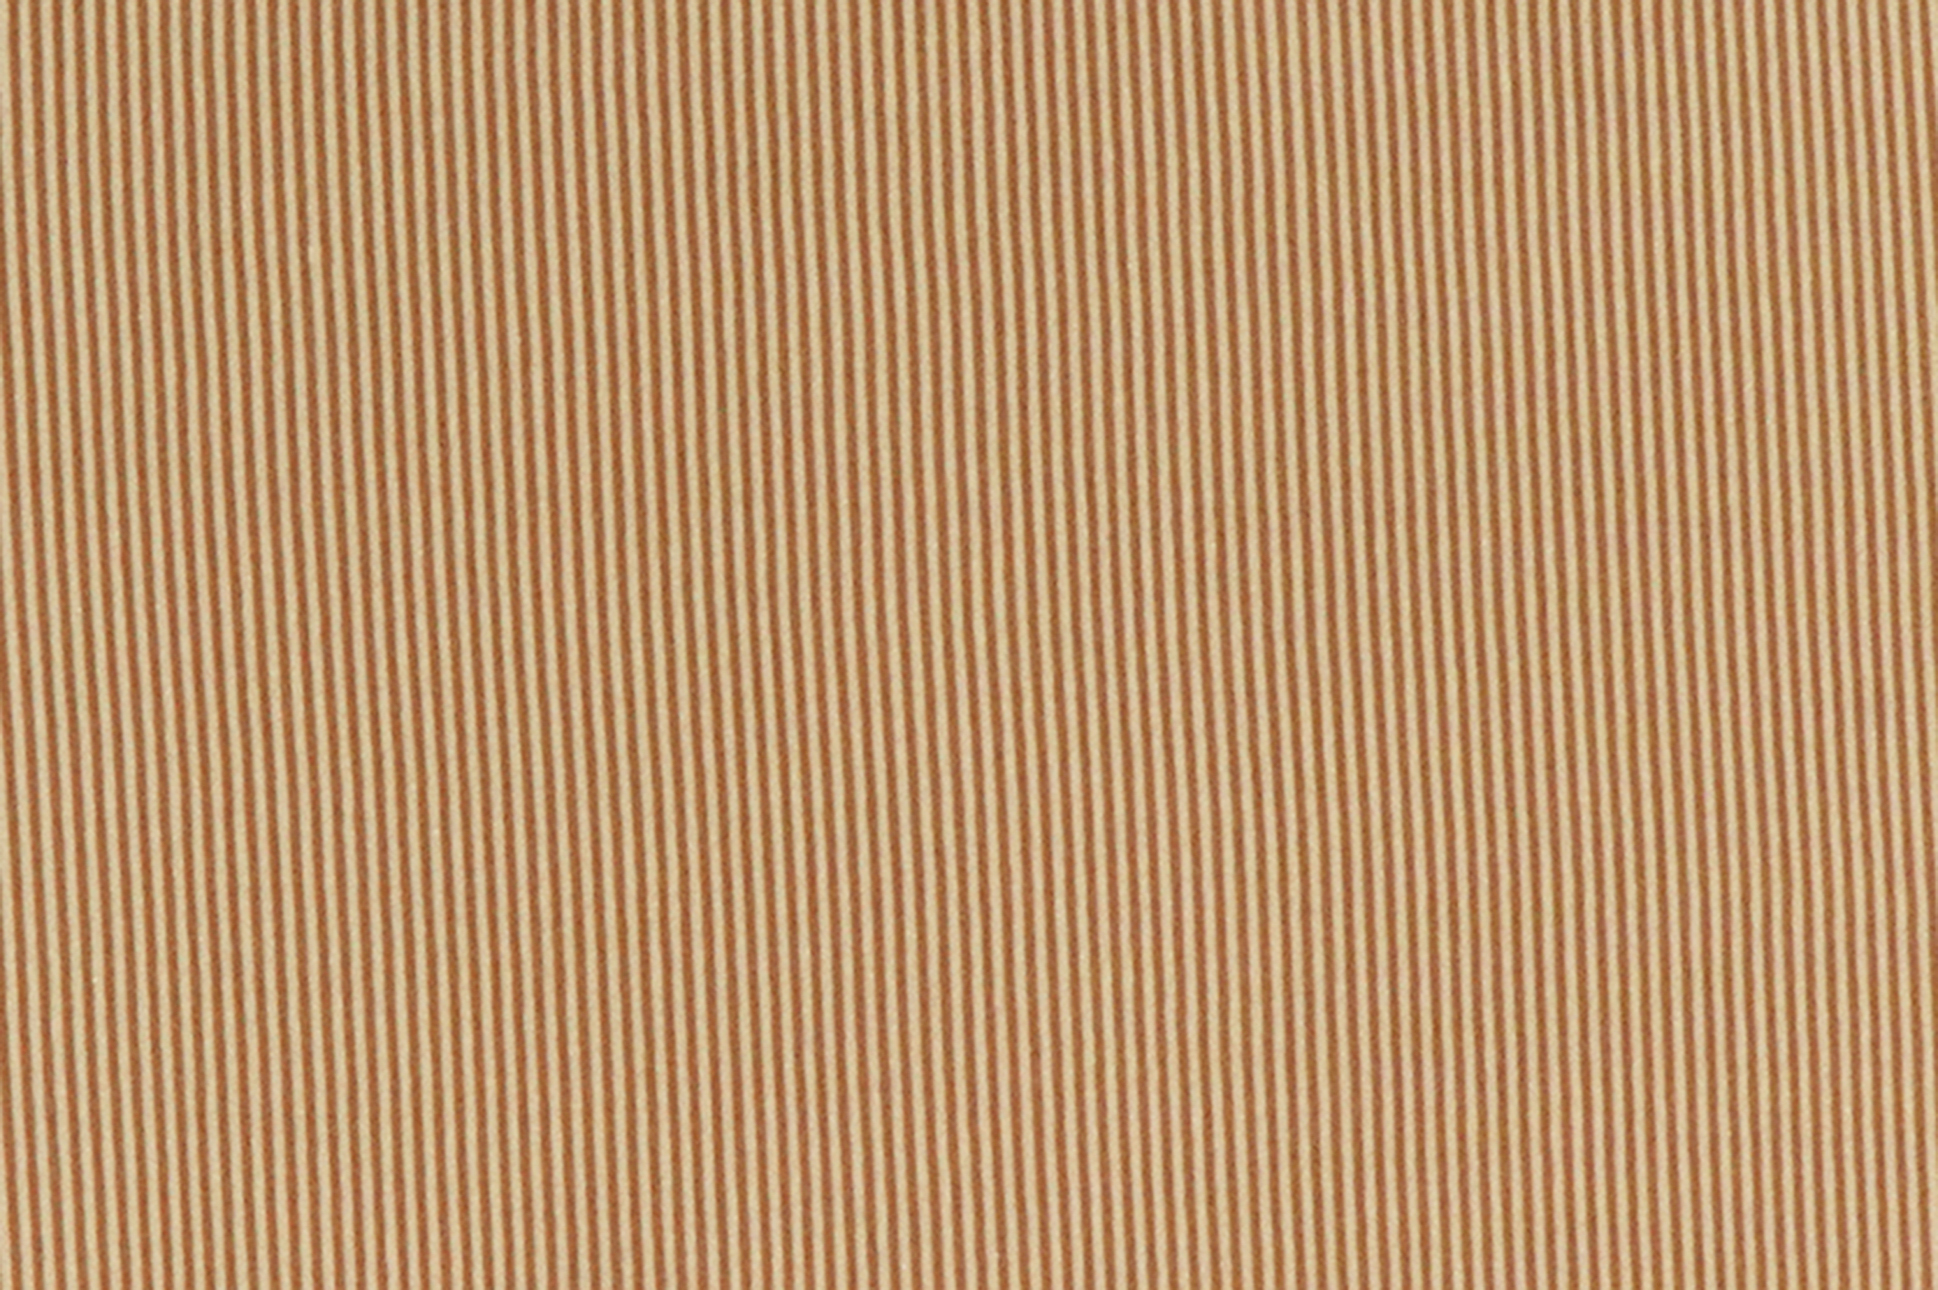 Jersey di cotone, strisce in sabbia e marrone